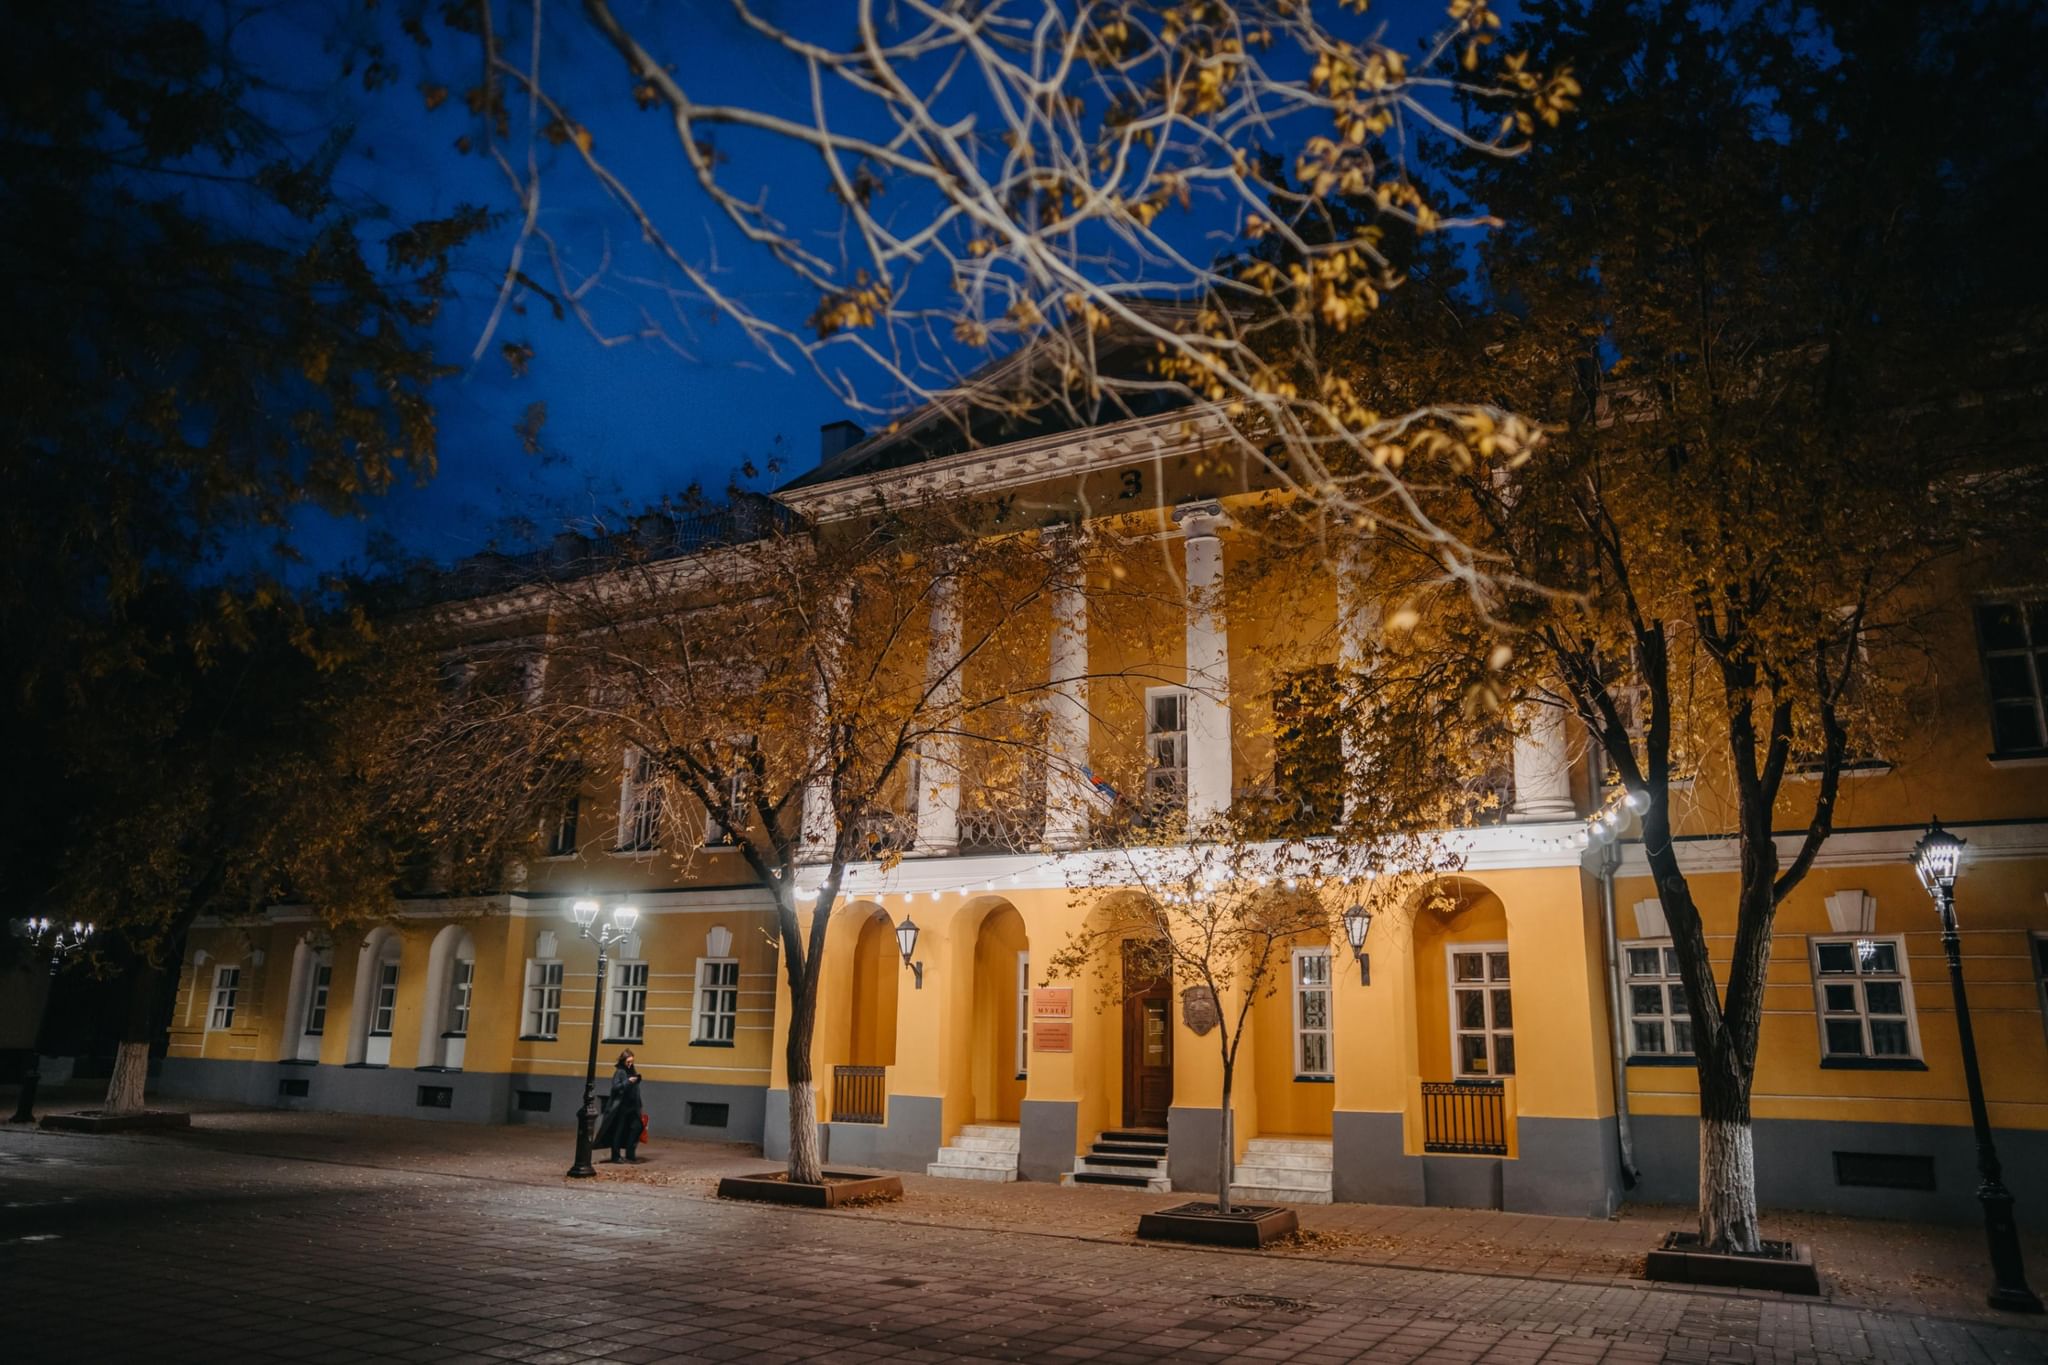 Краеведческий музей в оренбурге фото